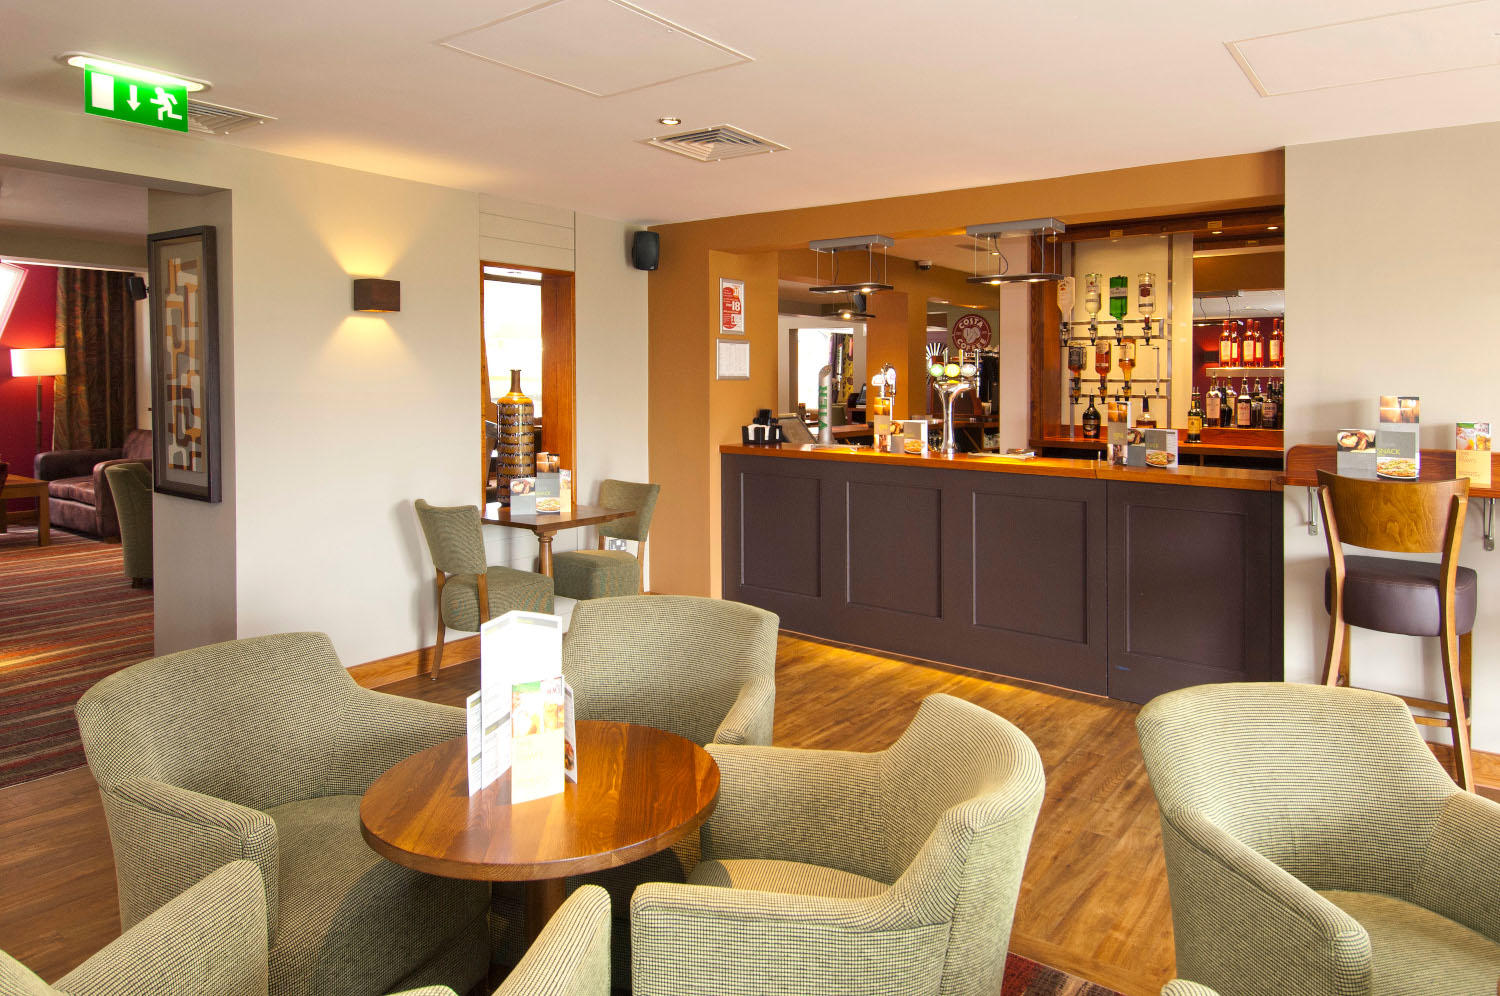 Thyme restaurant interior Premier Inn Manchester Bury hotel Bury 03333 219231